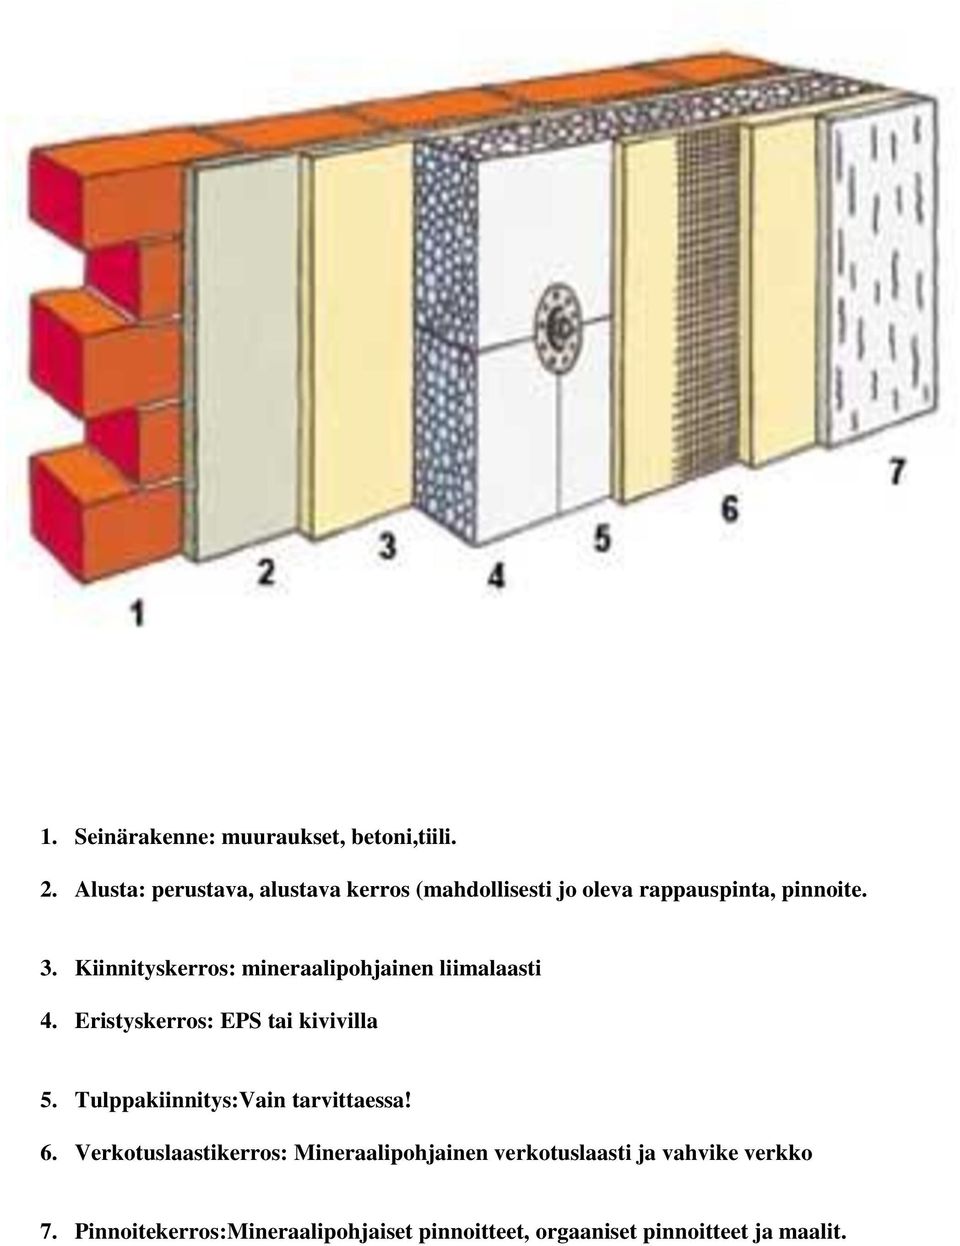 Kiinnityskerros: mineraalipohjainen liimalaasti 4. Eristyskerros: EPS tai kivivilla 5.